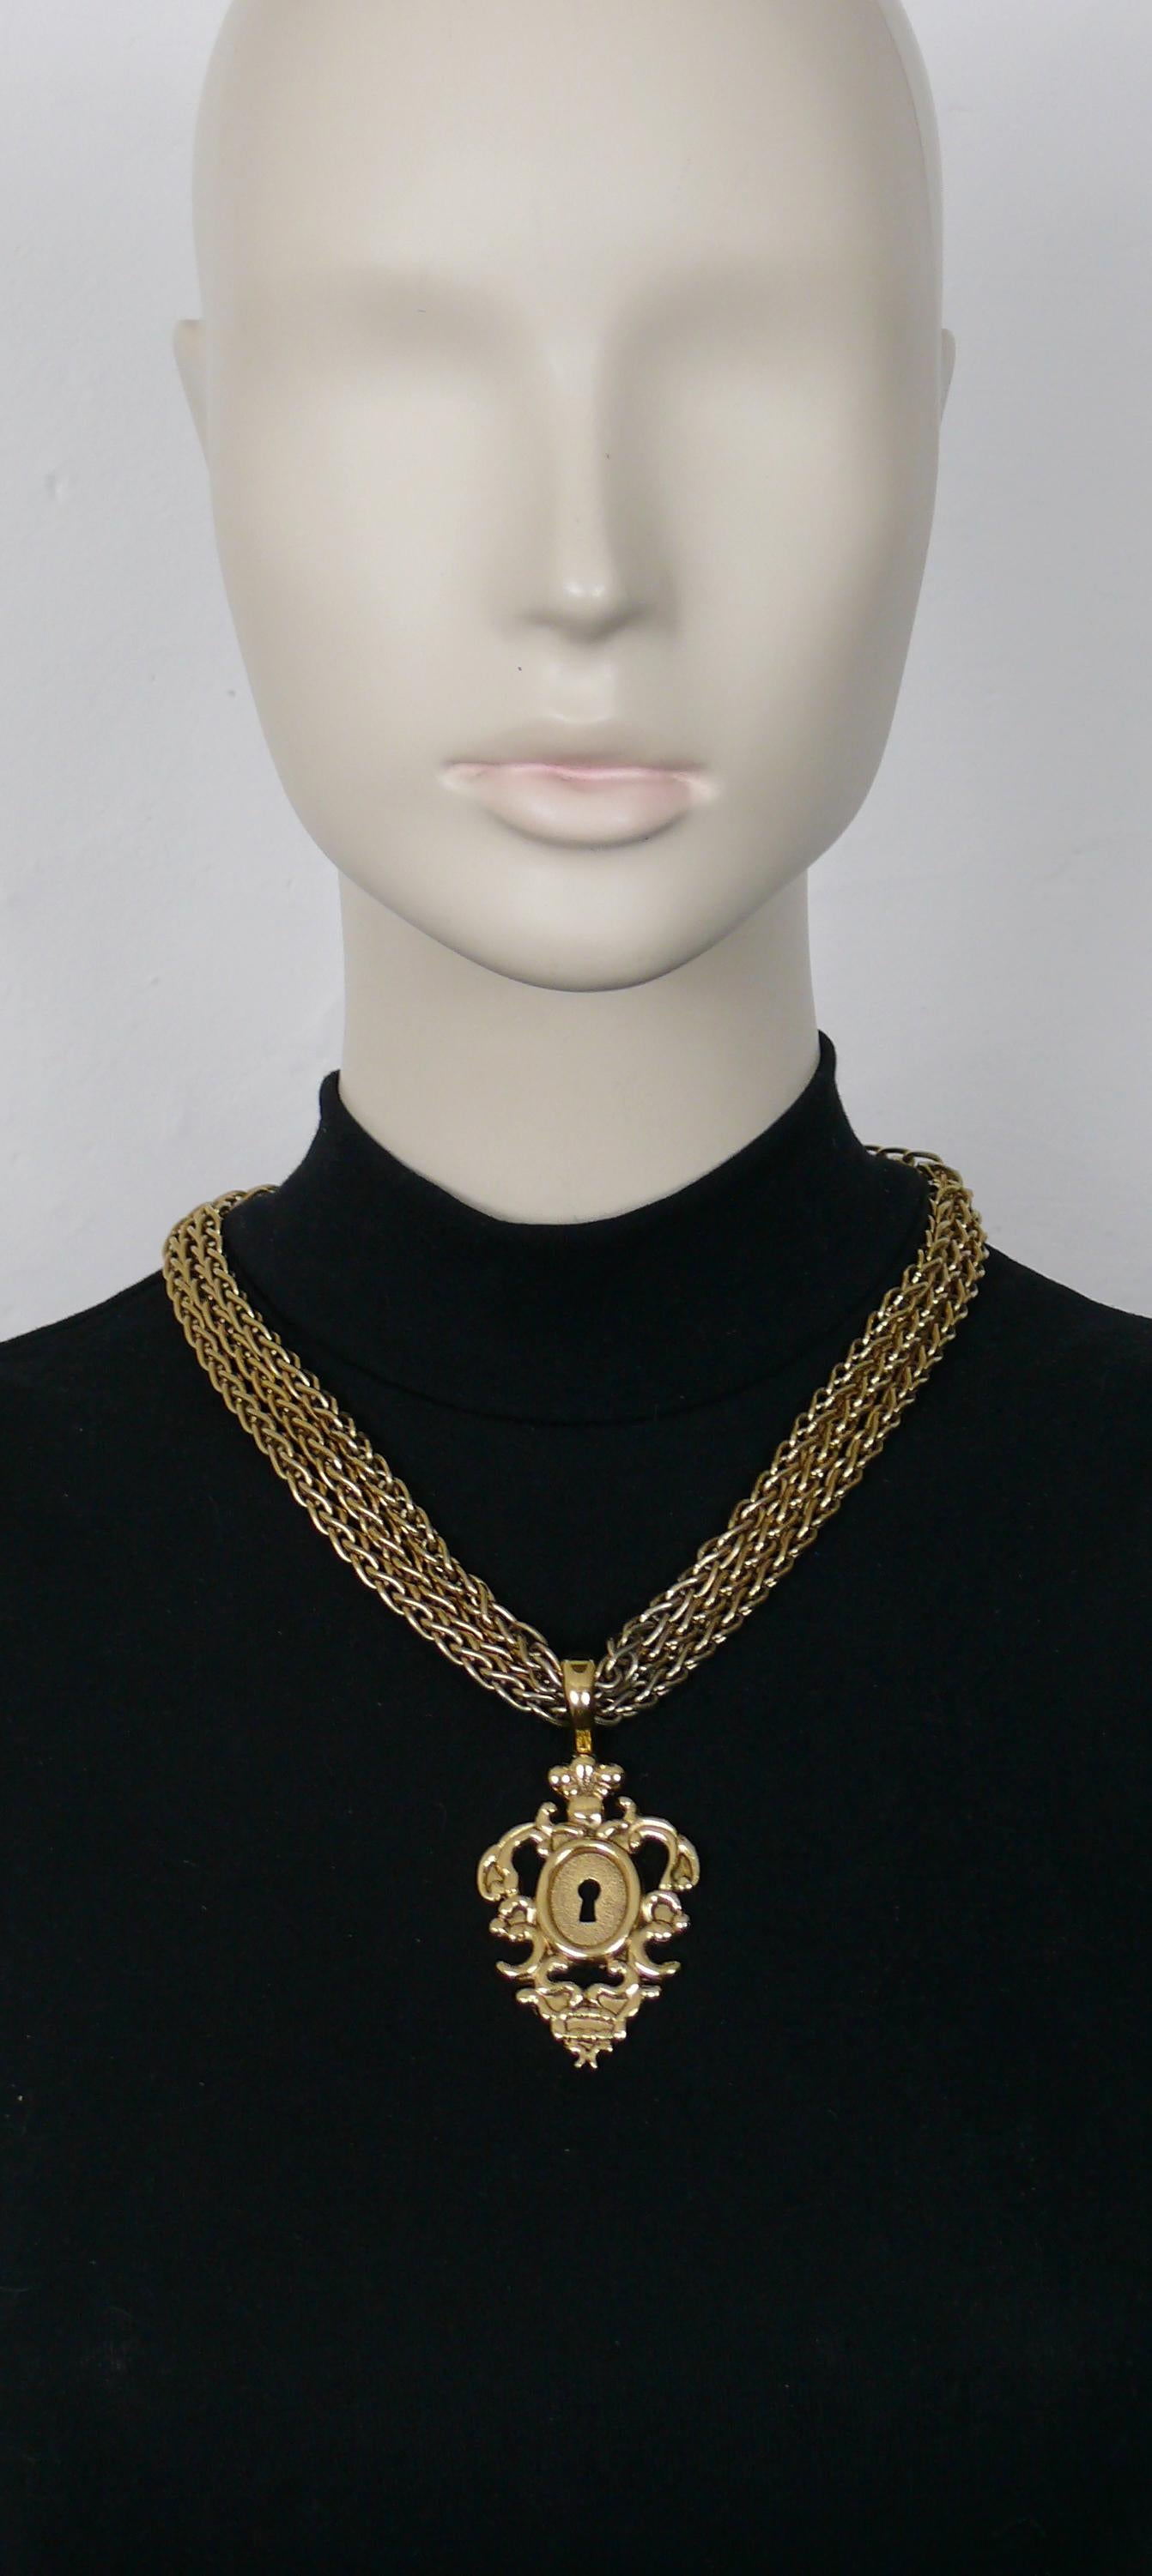 ROCHAS Vintage-Halskette mit goldfarbener Dreifachkette und einem ikonischen Anhänger im Barockschloss-Design.

Auf der Rückseite des Schlosses ist ROCHAS 882 eingeprägt.

T-Bar und Knebelverschluss.

Ungefähre Maße: tragbare Länge ca. 52 cm (20,47